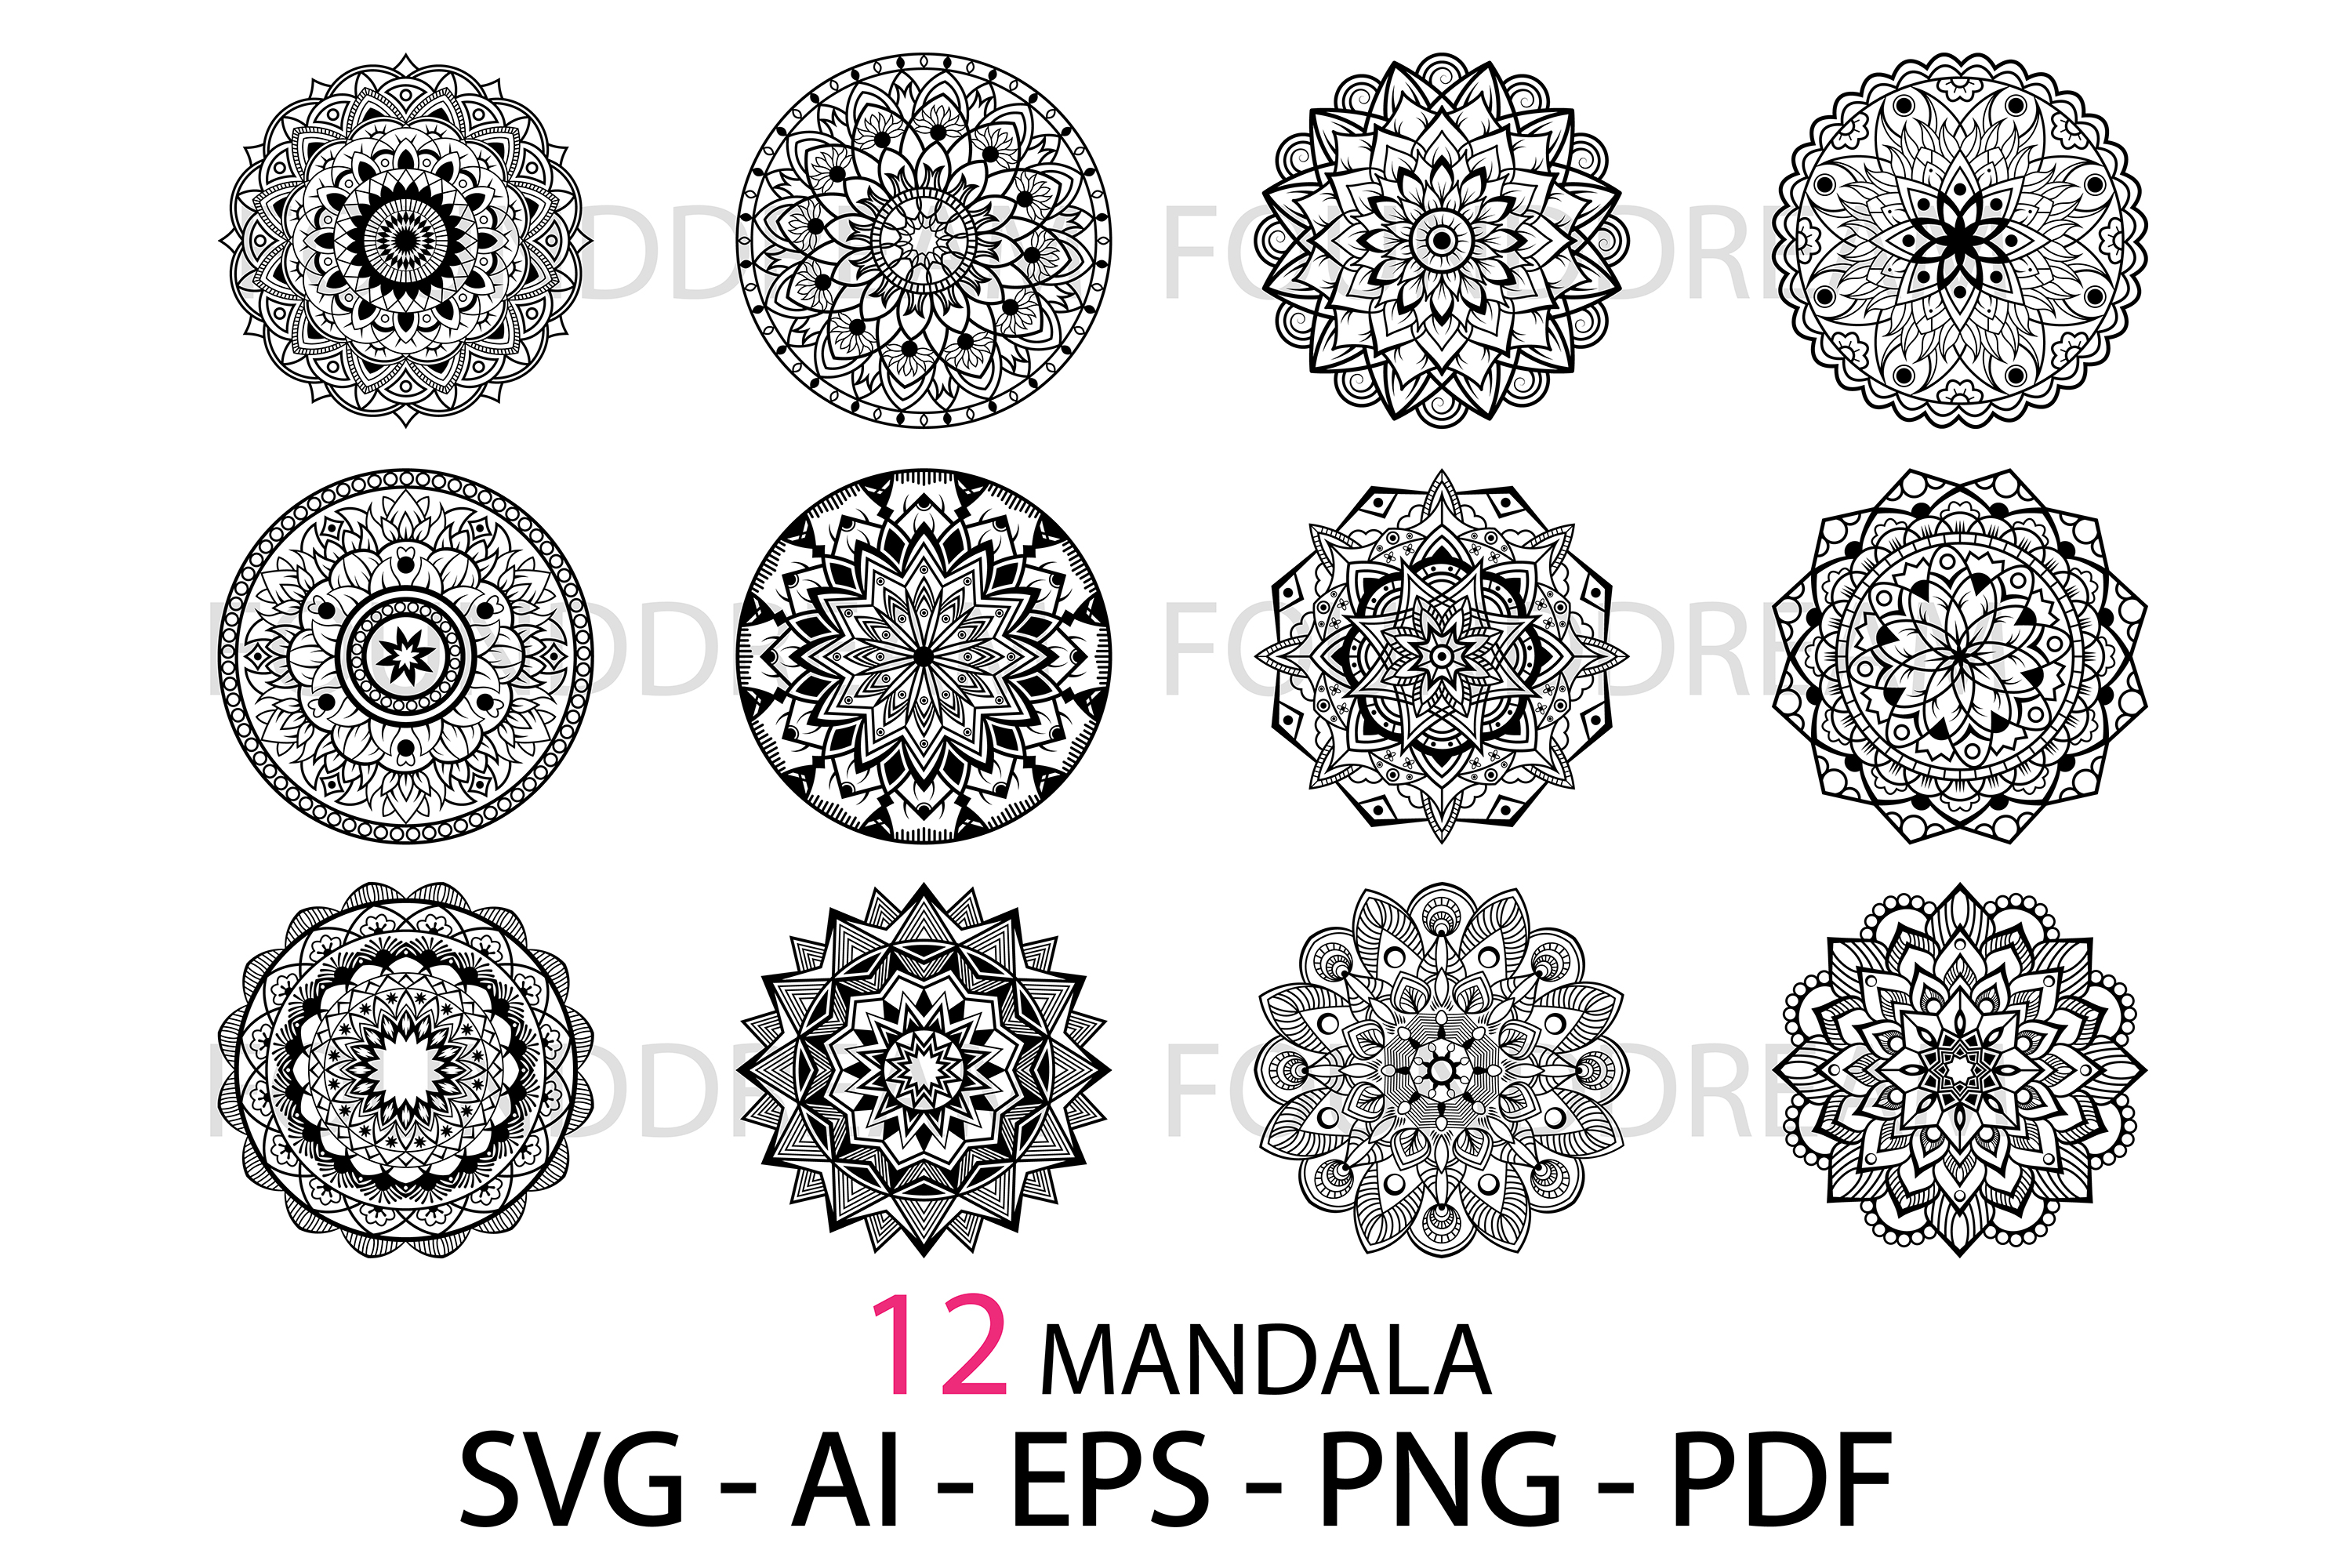 Download Mandala svg files